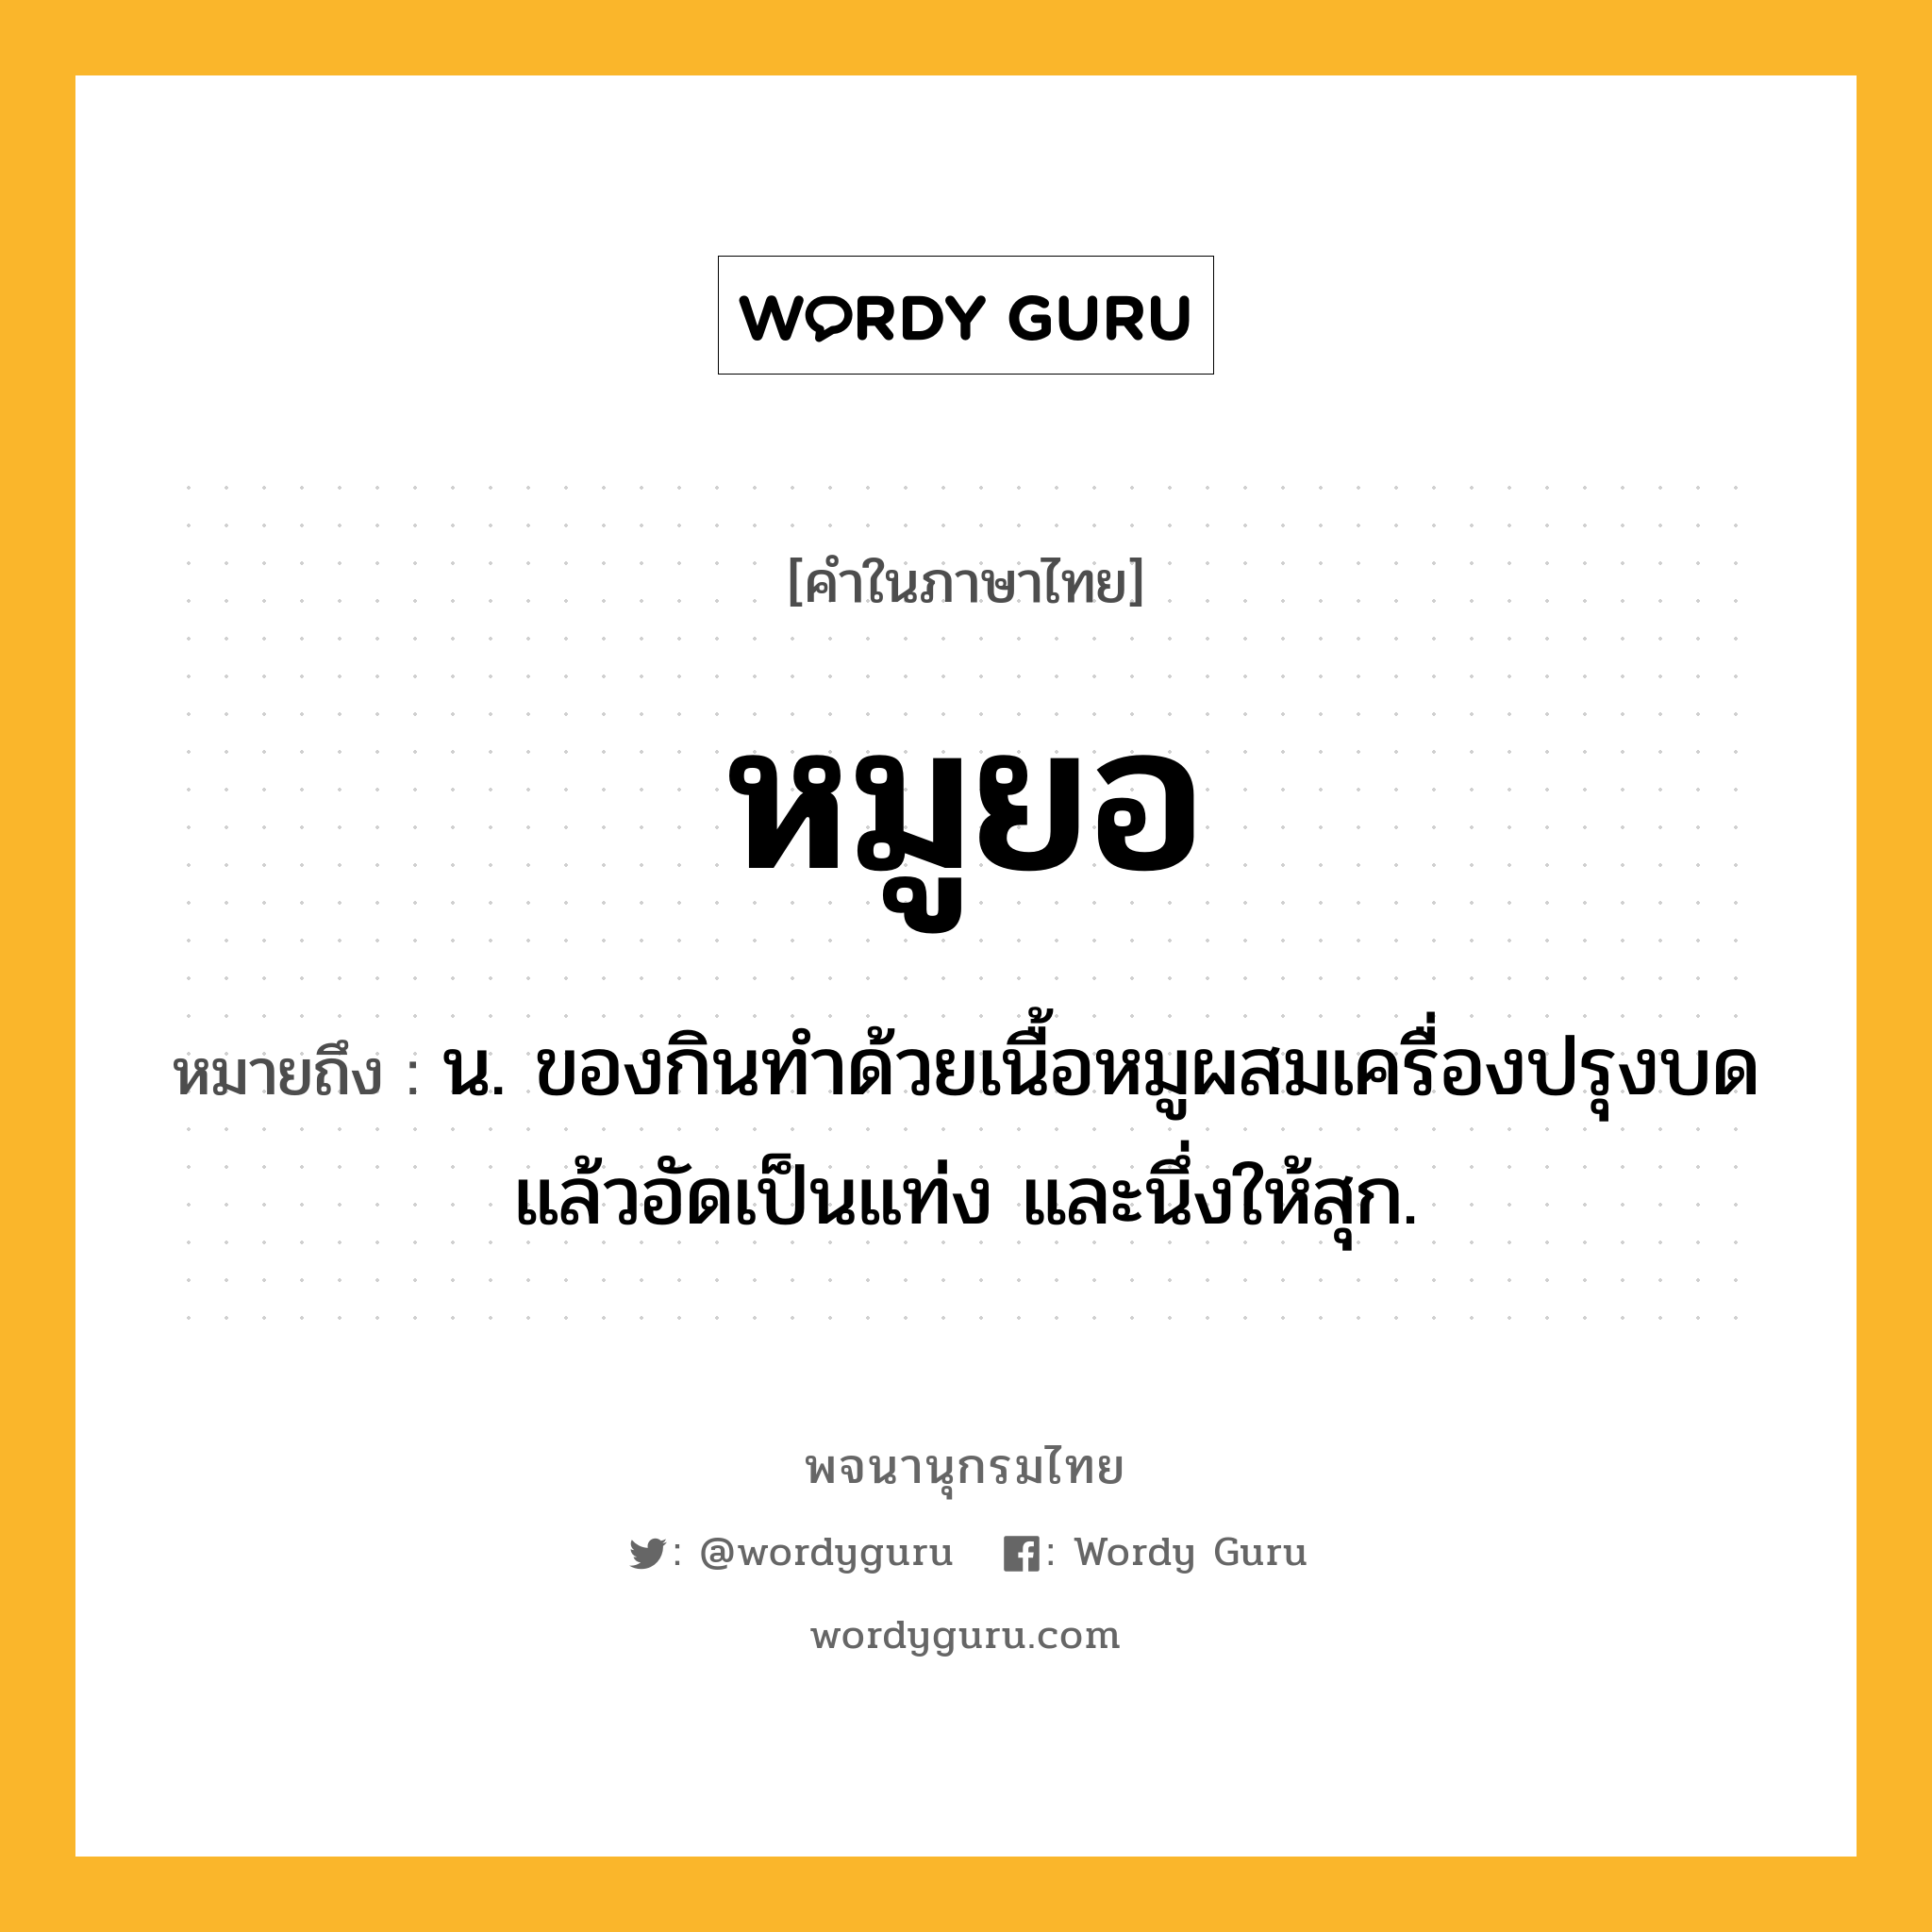 หมูยอ หมายถึงอะไร?, คำในภาษาไทย หมูยอ หมายถึง น. ของกินทําด้วยเนื้อหมูผสมเครื่องปรุงบดแล้วอัดเป็นแท่ง และนึ่งให้สุก.